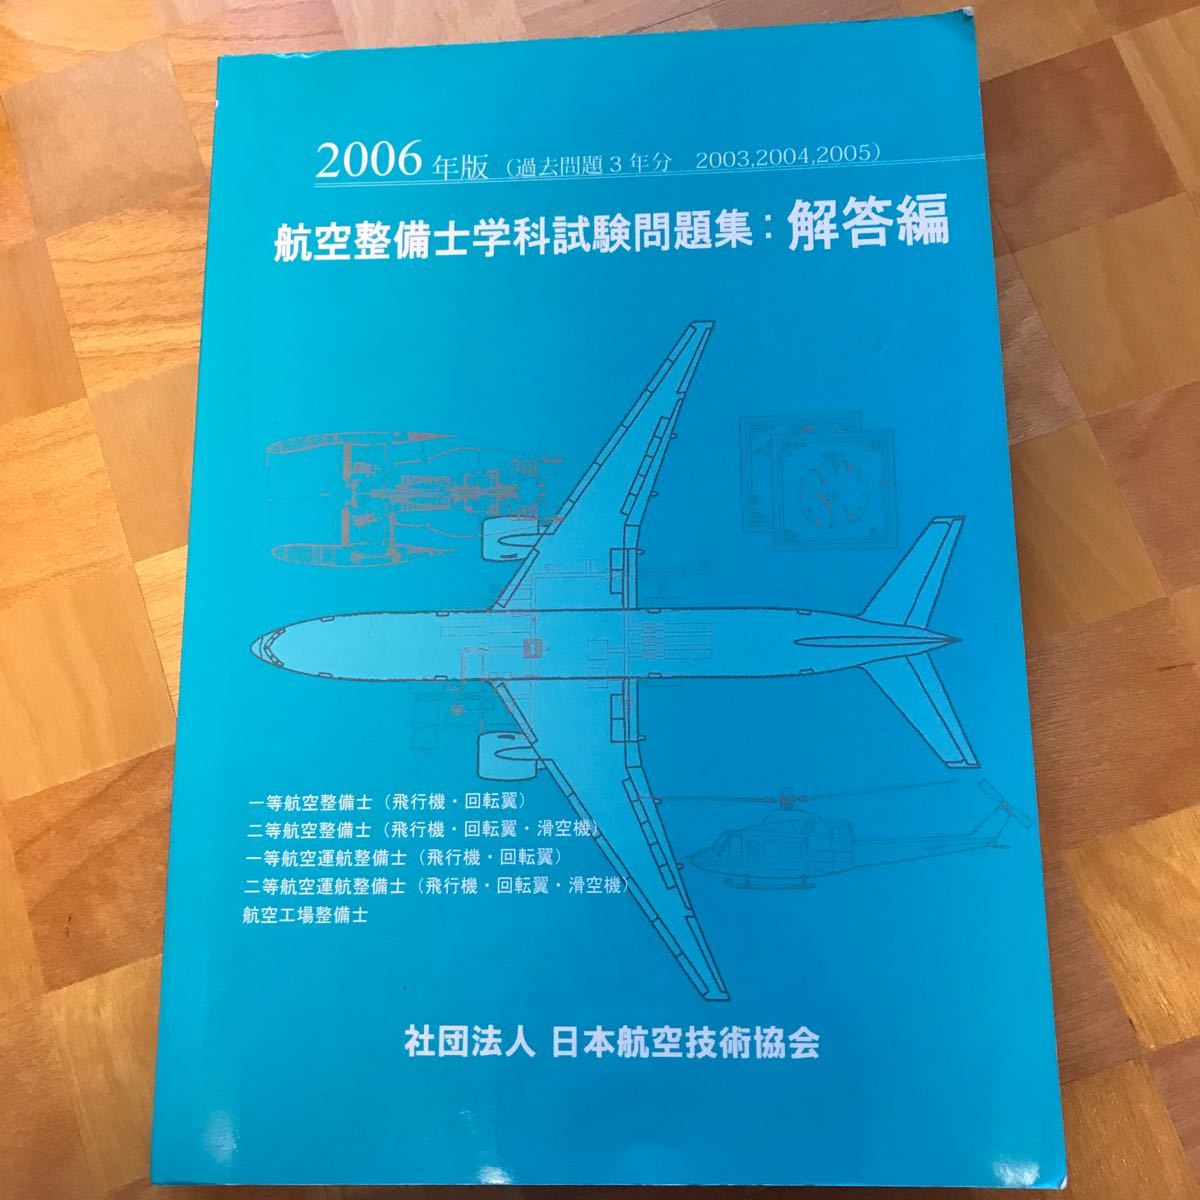 航空整備士学科試験問題集2006年問題編、解答編セット